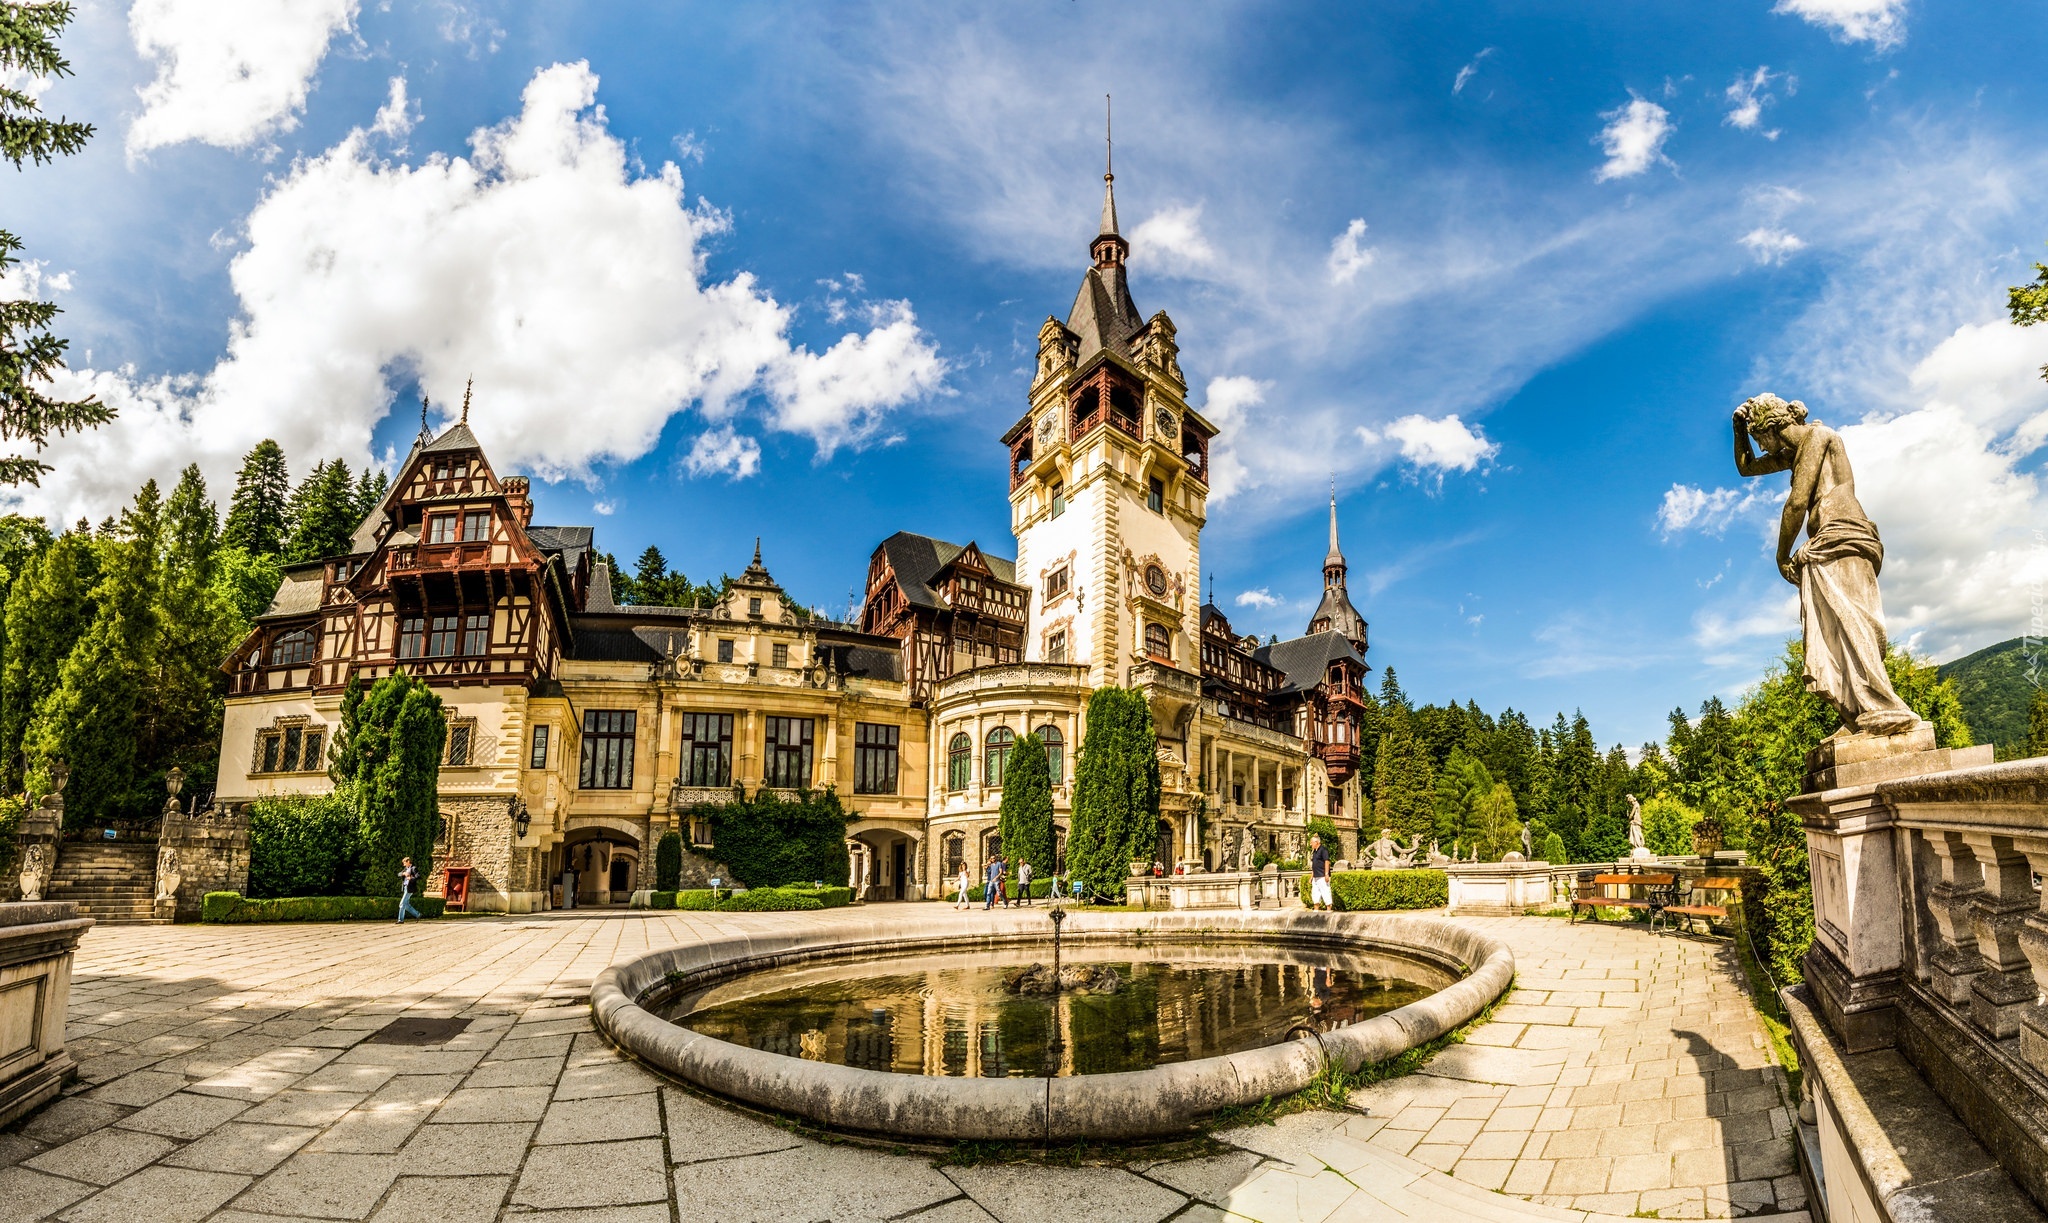 Zamek w Branie, Bran, Siedmiogród, Rumunia